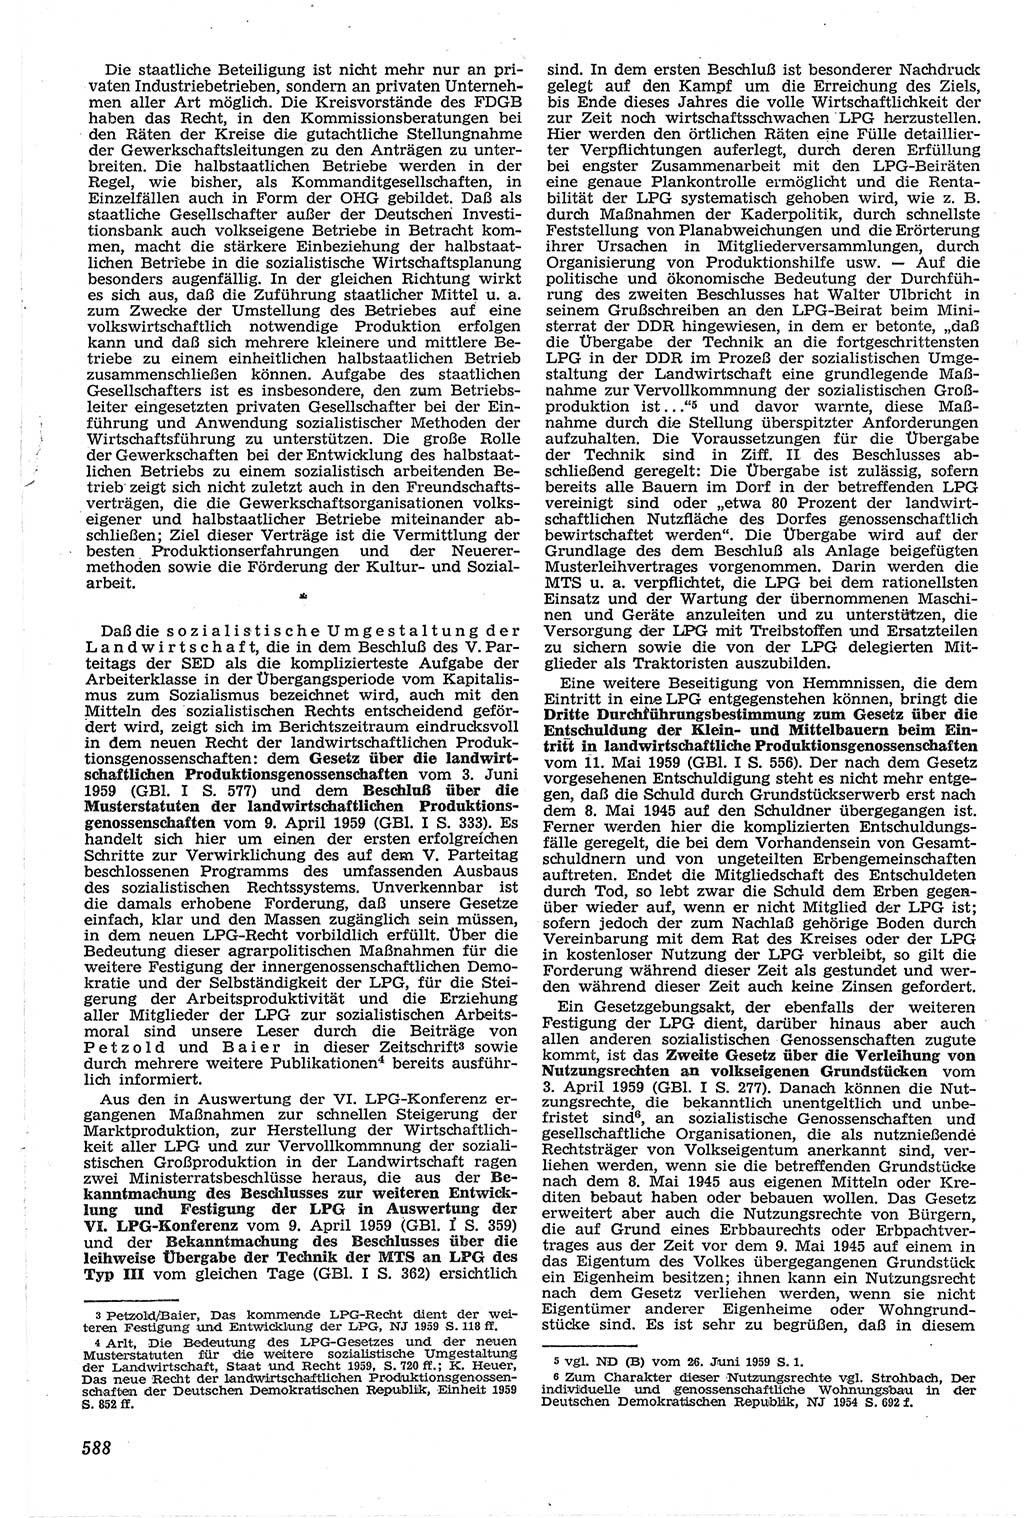 Neue Justiz (NJ), Zeitschrift für Recht und Rechtswissenschaft [Deutsche Demokratische Republik (DDR)], 13. Jahrgang 1959, Seite 588 (NJ DDR 1959, S. 588)